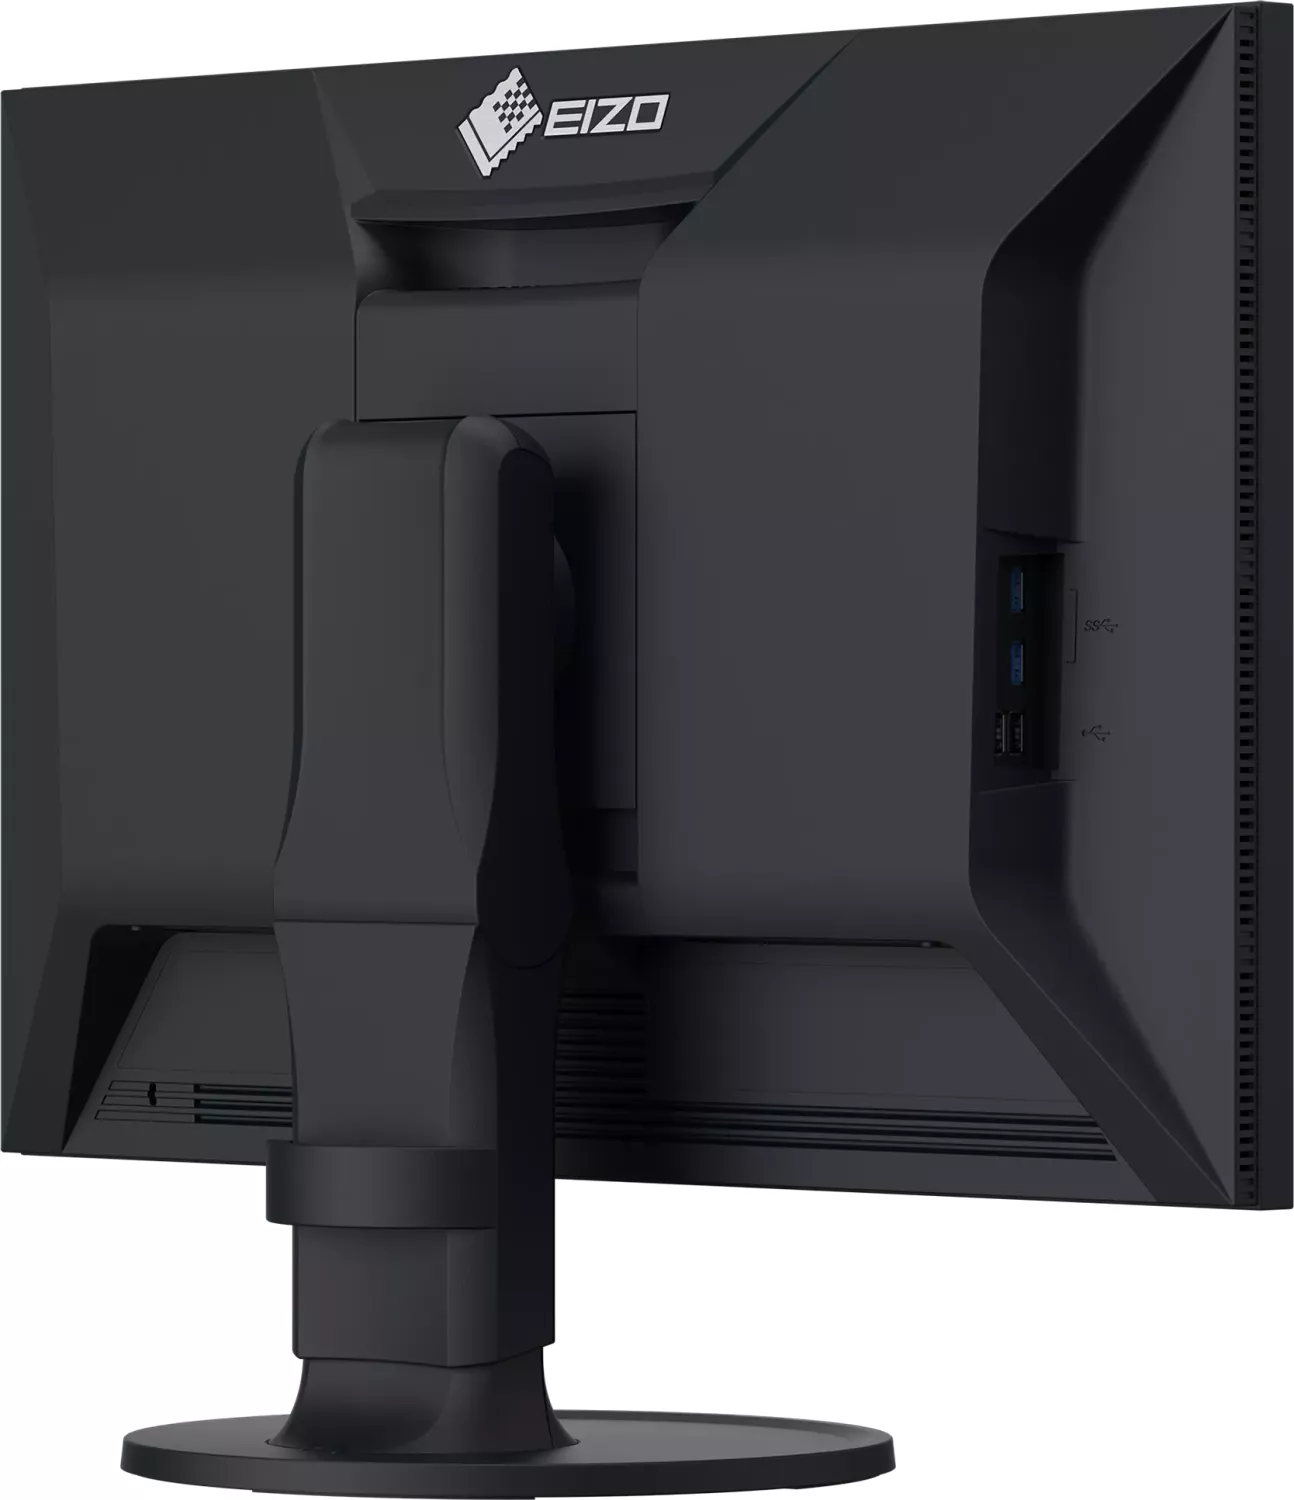 EIZO モニター ColorEdge CS2420-BK、EX-3、遮光フード - タブレット